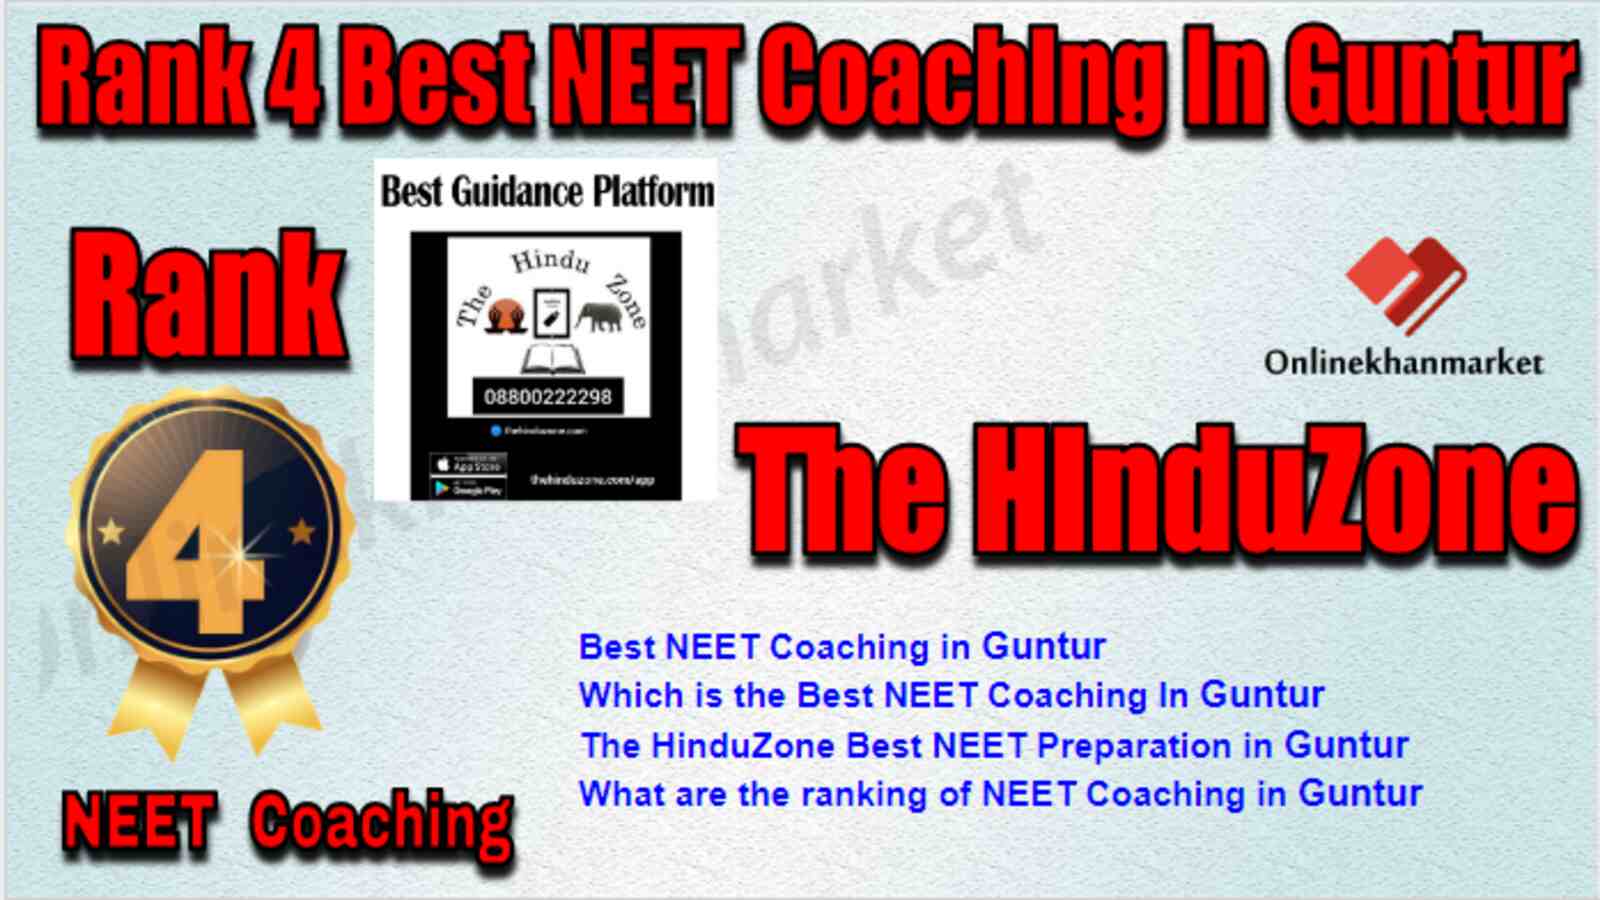 Rank 4 Best NEET Coaching in Guntur